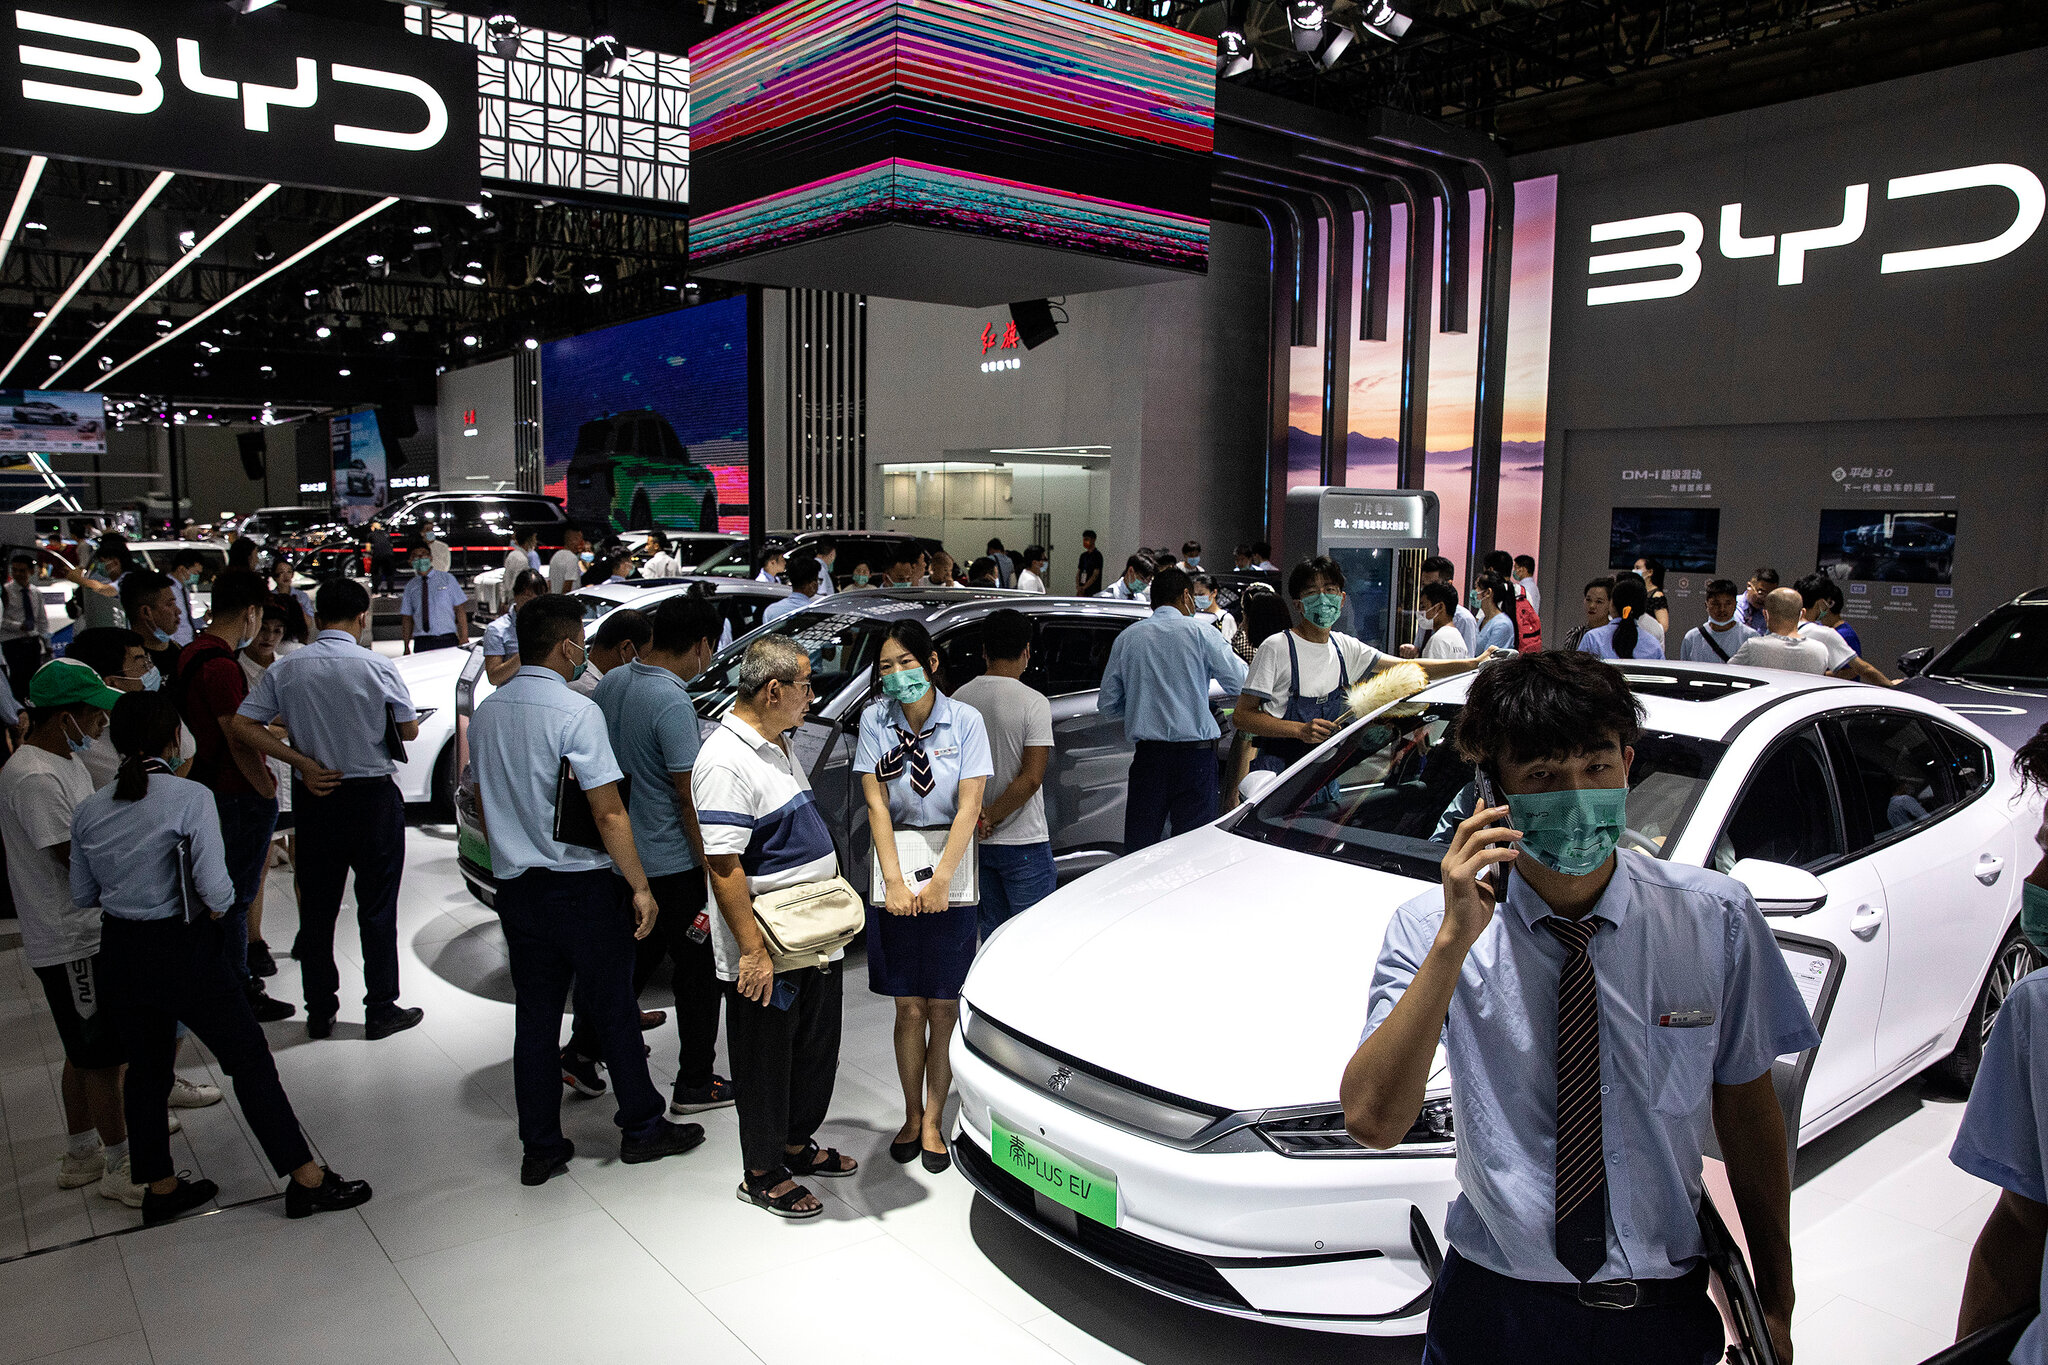 معرض سيارات كهربائية لشركة بي واي دي الصينية- الصورة من "نيو يورك تايمز"